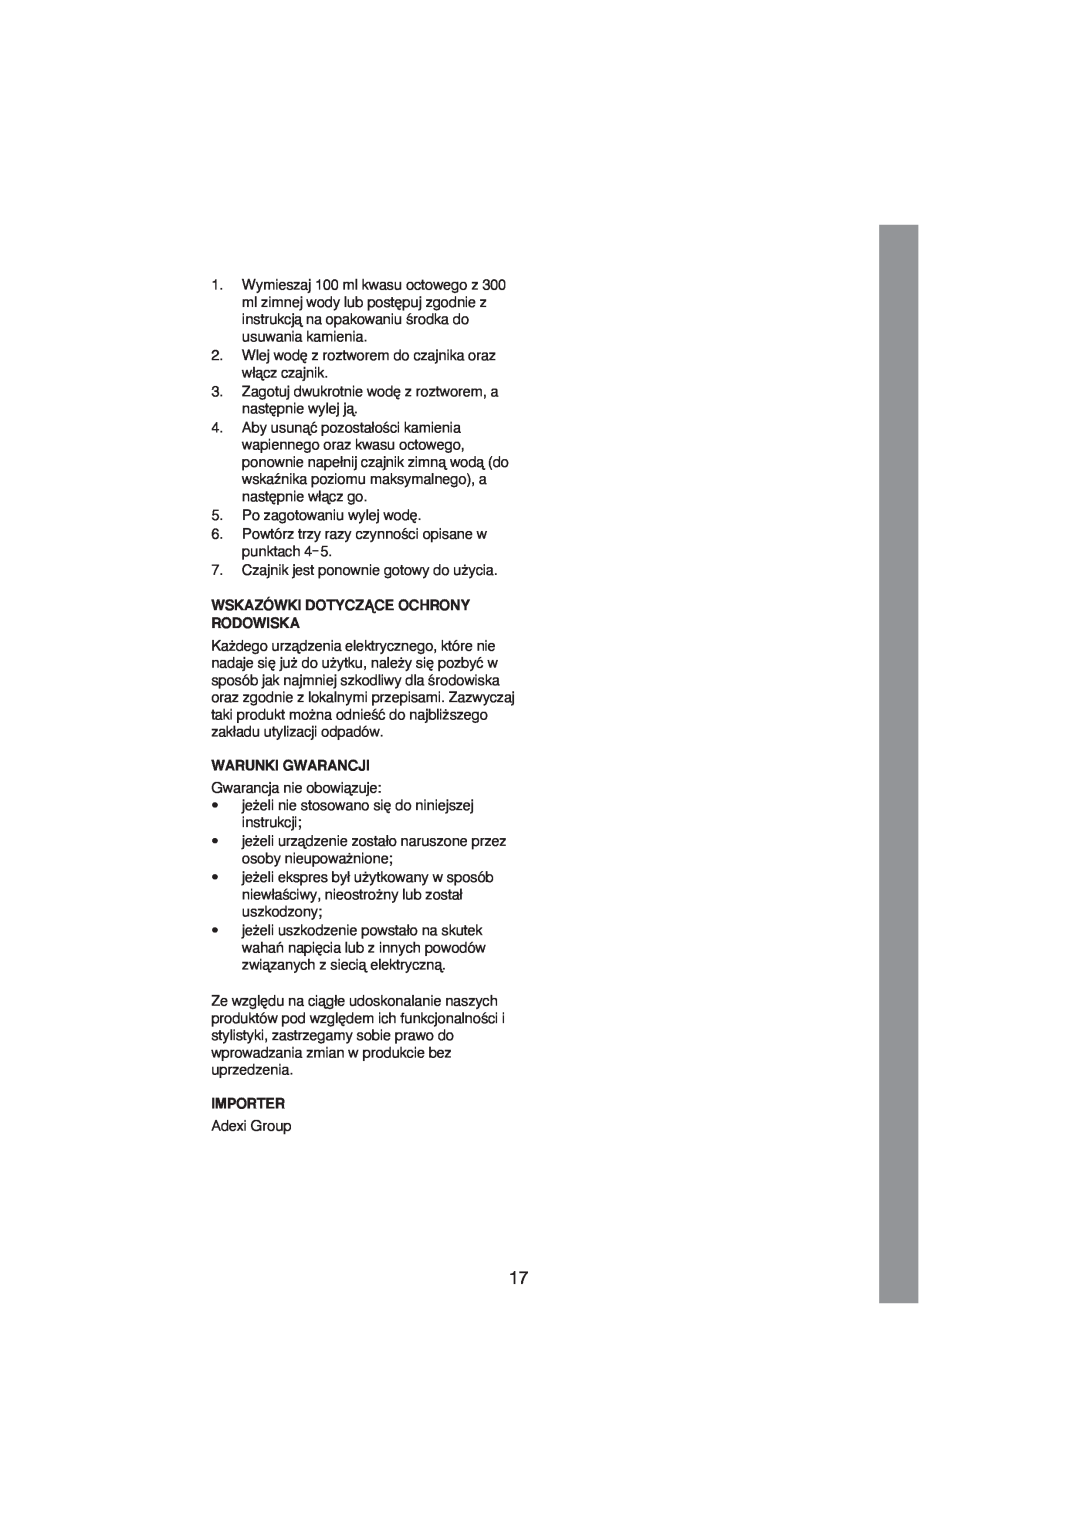 Melissa 245-029 manual Wskazówki Dotyczñce Ochrony Rodowiska, Warunki Gwarancji, Importer 